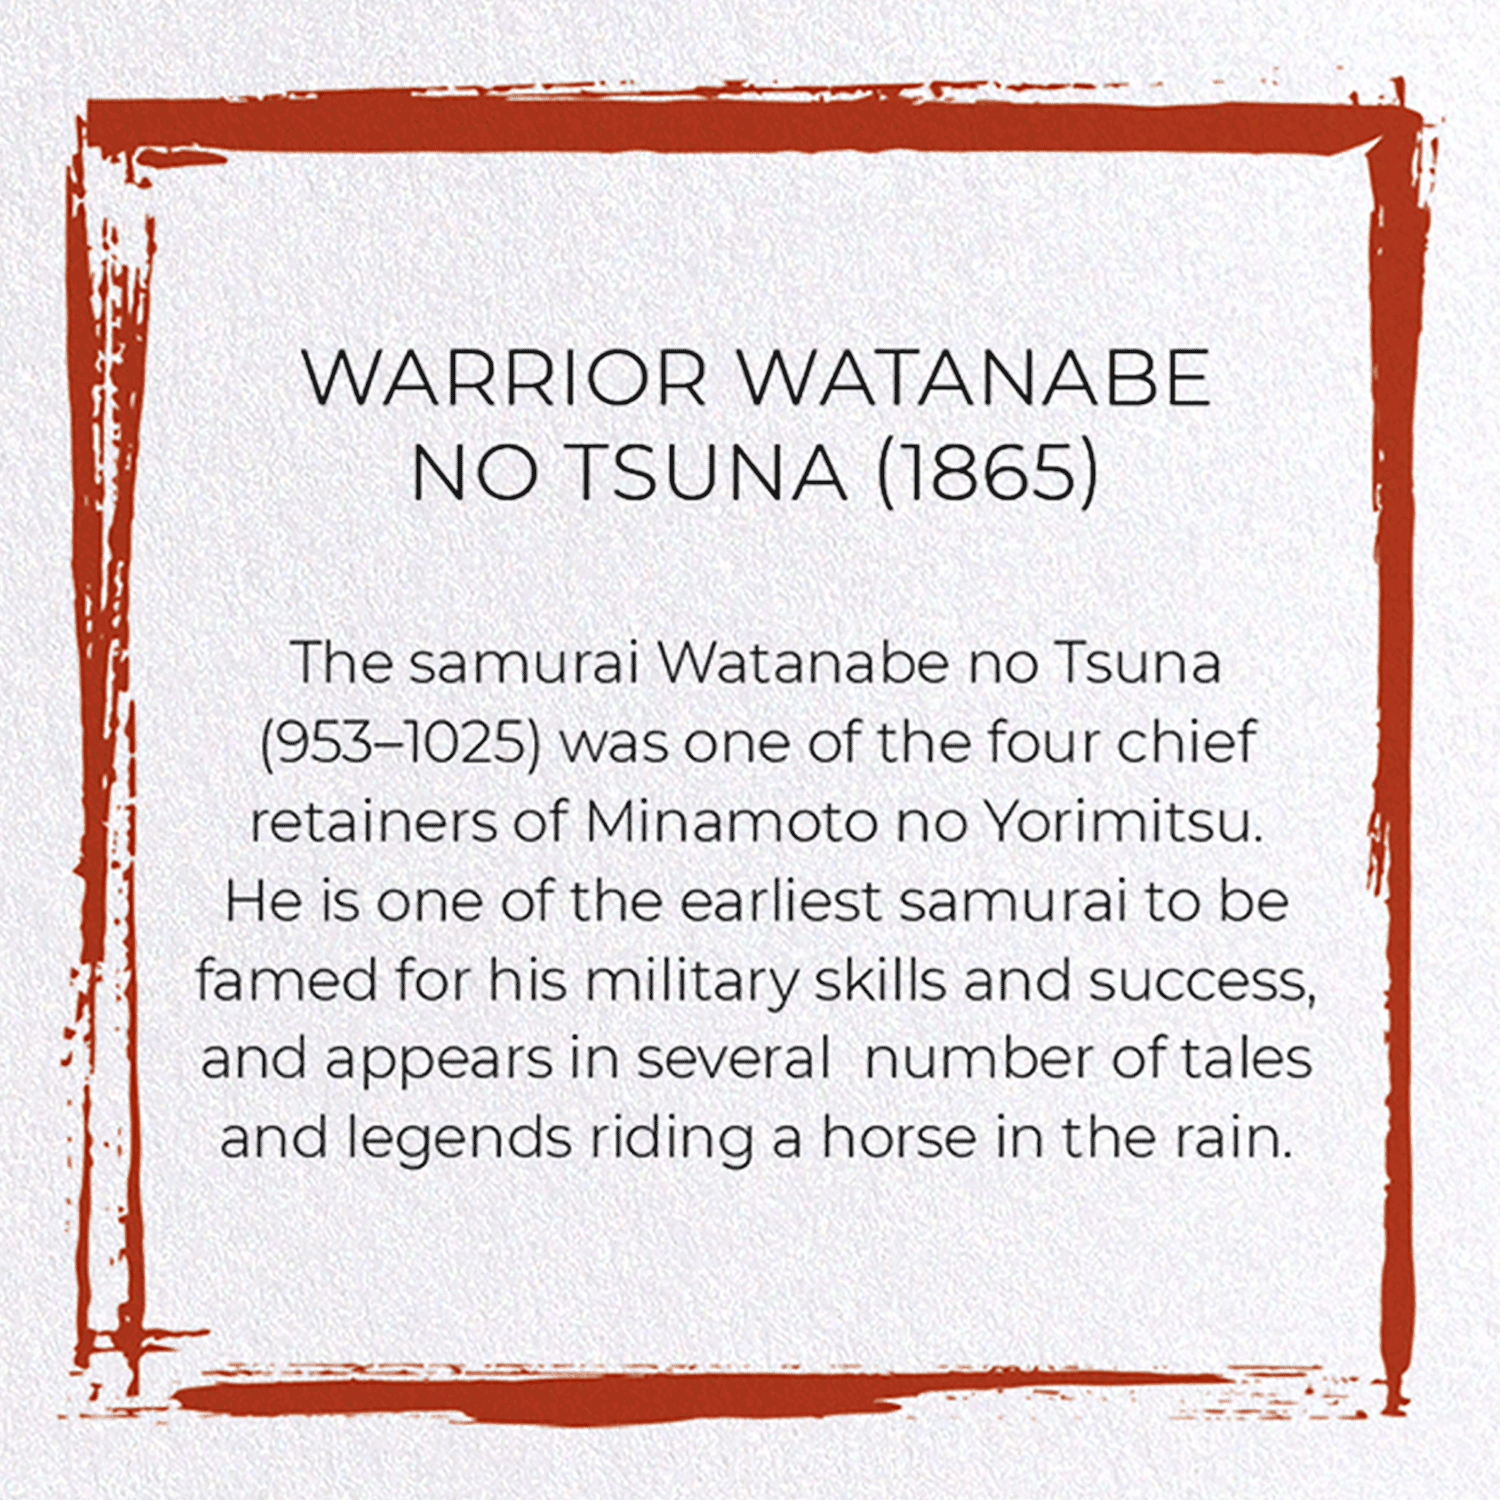 WARRIOR WATANABE NO TSUNA (1865)